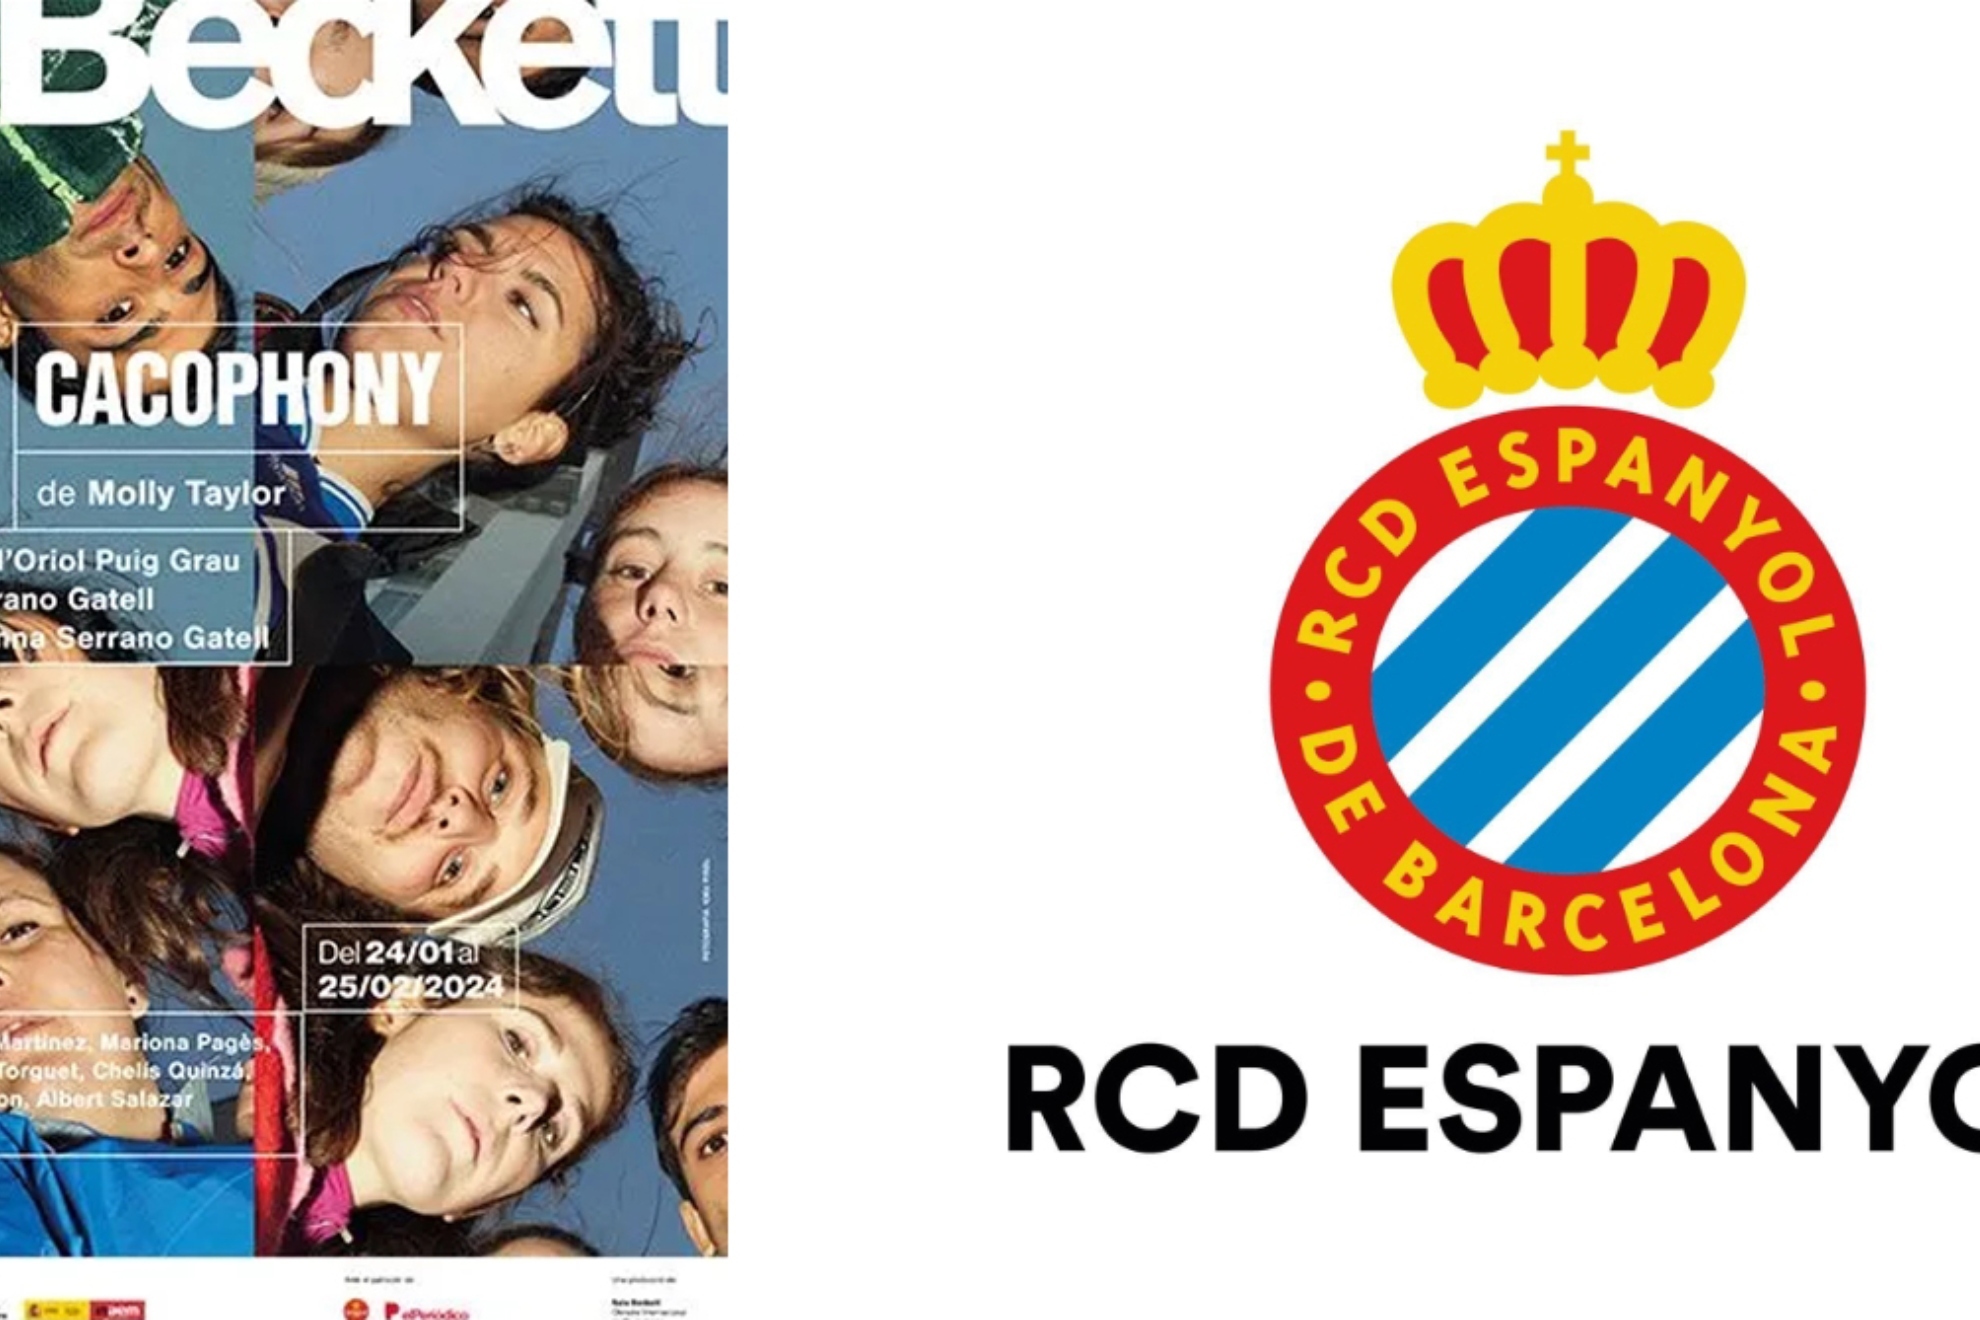 La Sala Beckett responde al Espanyol: No damos crédito